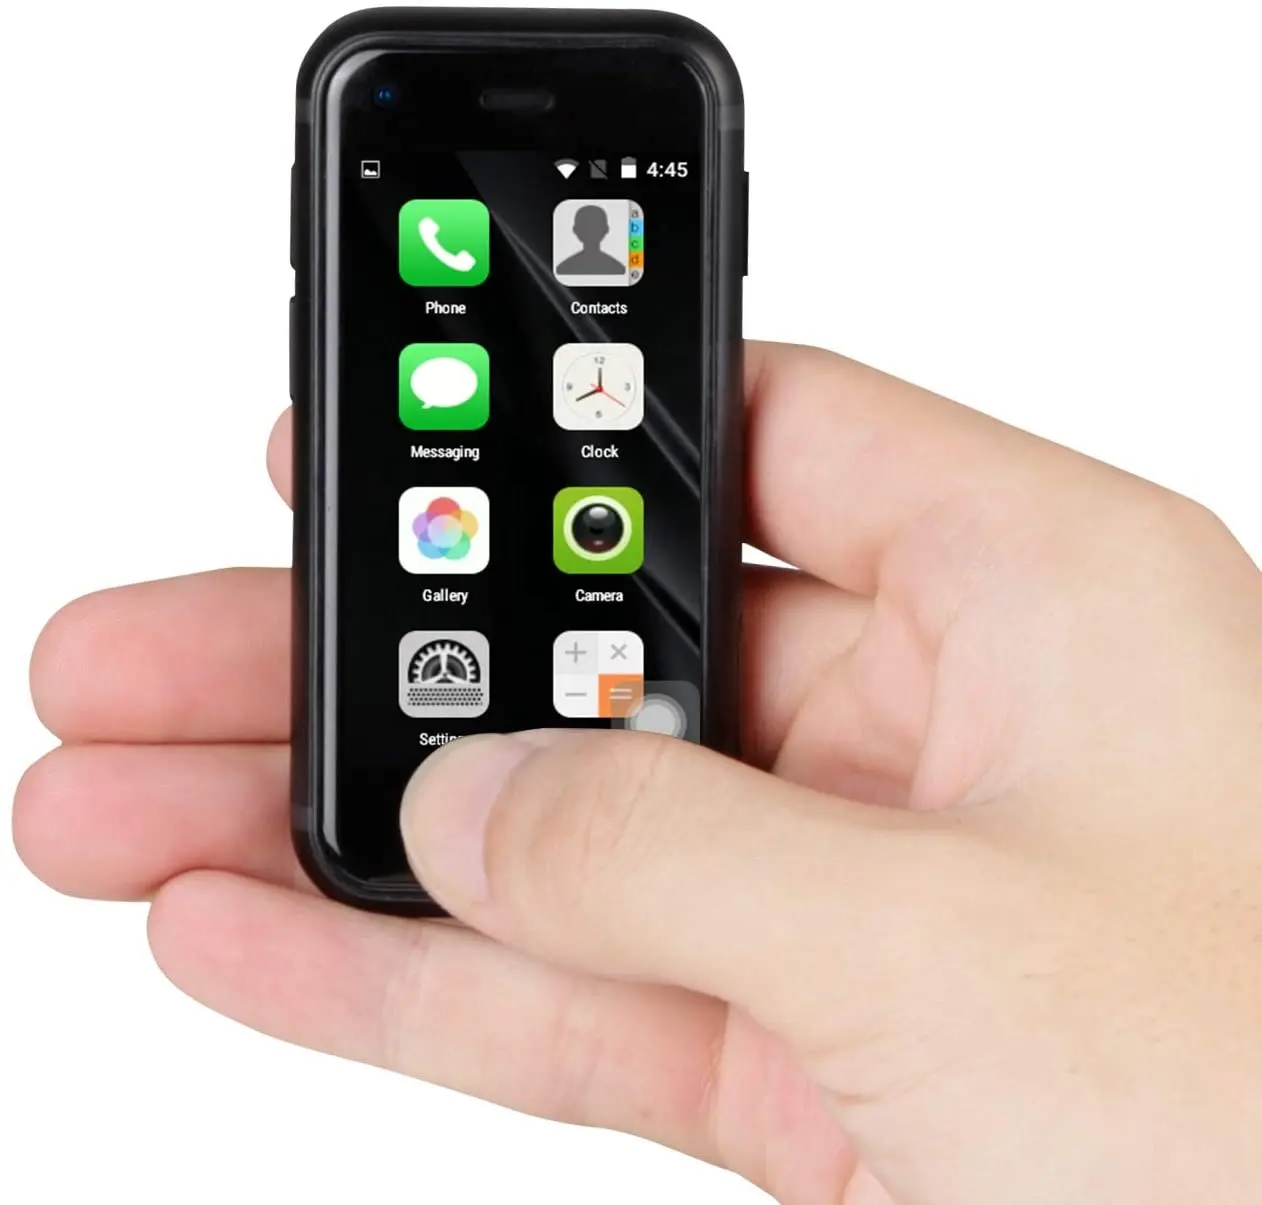 مصغرة الهاتف الذكي هاتف الطفل Sudroid في العالم أصغر هاتف محمول 2.5 بوصة الروبوت الهاتف الصغيرة رباعية النواة 1G + 8G 5.0MP المزدوج